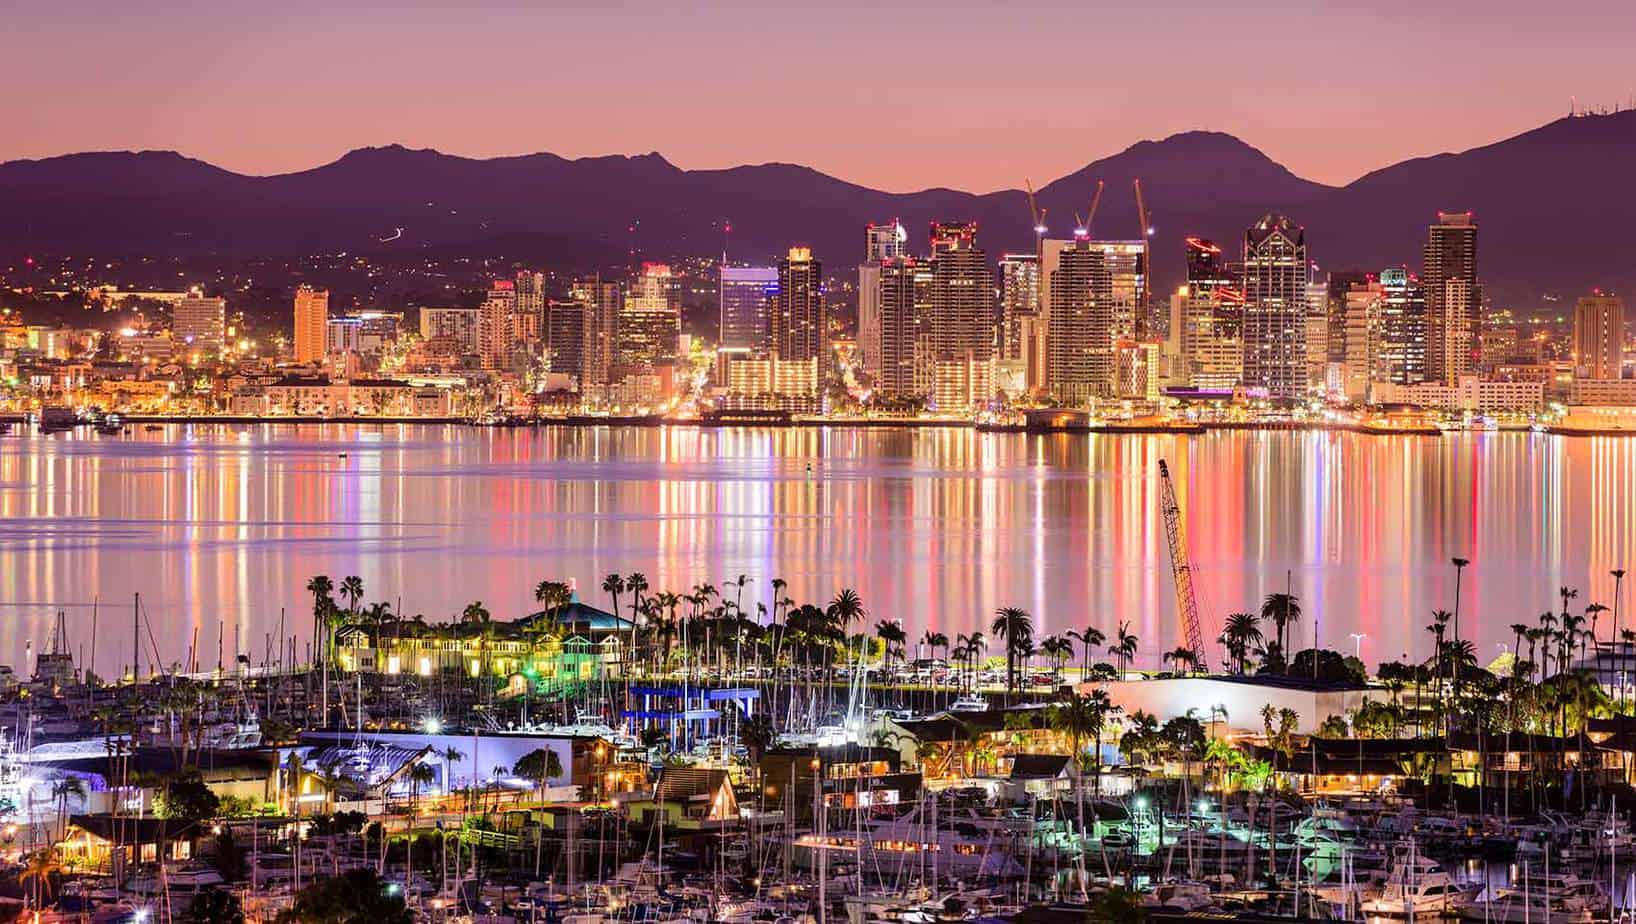 افضل 7 من فنادق سان دييغو امريكا موصى بها 2020